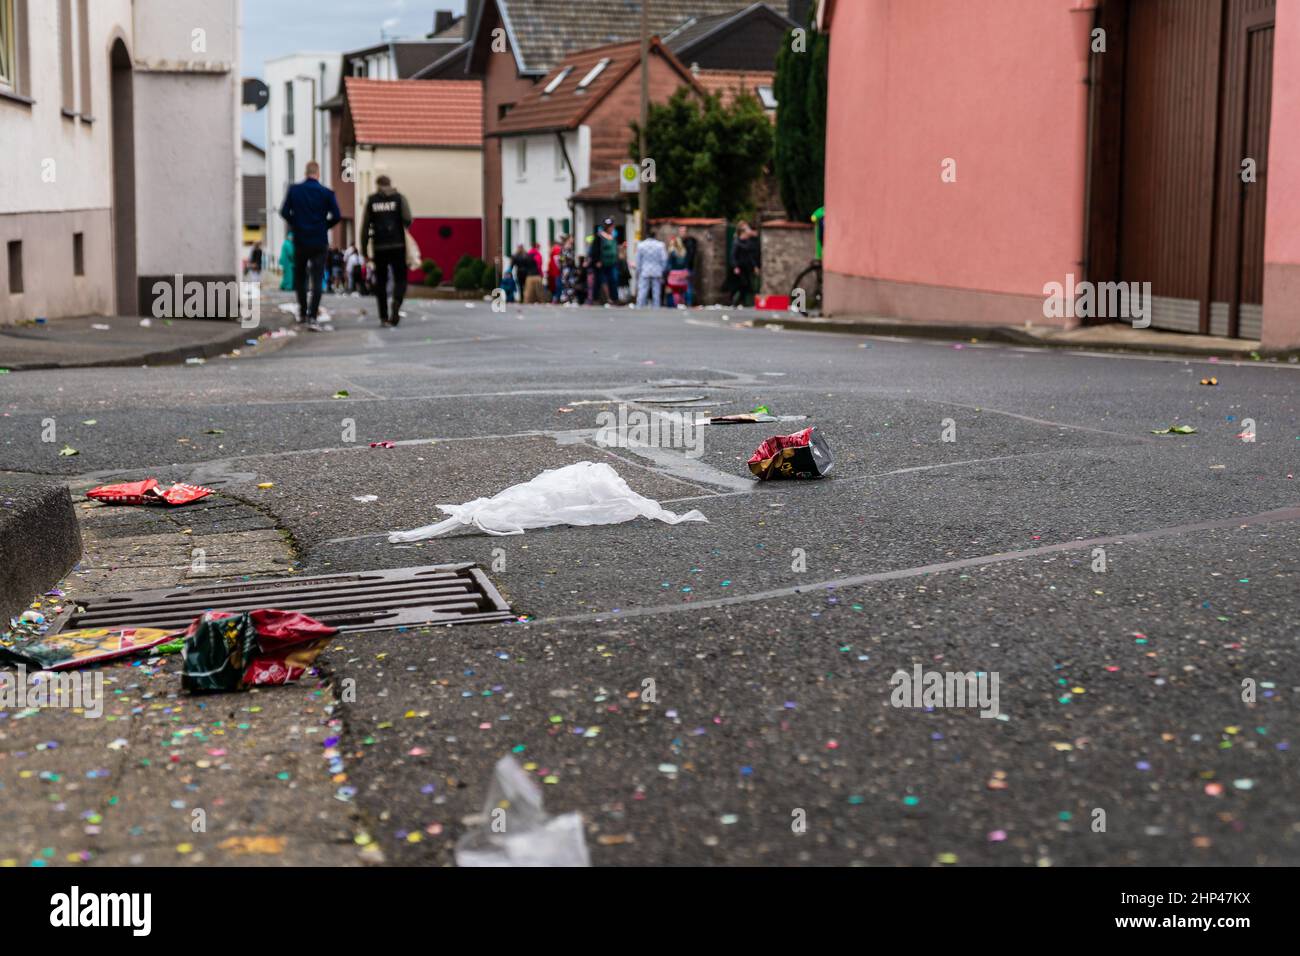 Bornheim, Renania Settentrionale-Vestfalia, Germania - 22 febbraio 2020: Spazzatura sconsiderata sulla strada dopo una sfilata di carnevale. Foto Stock